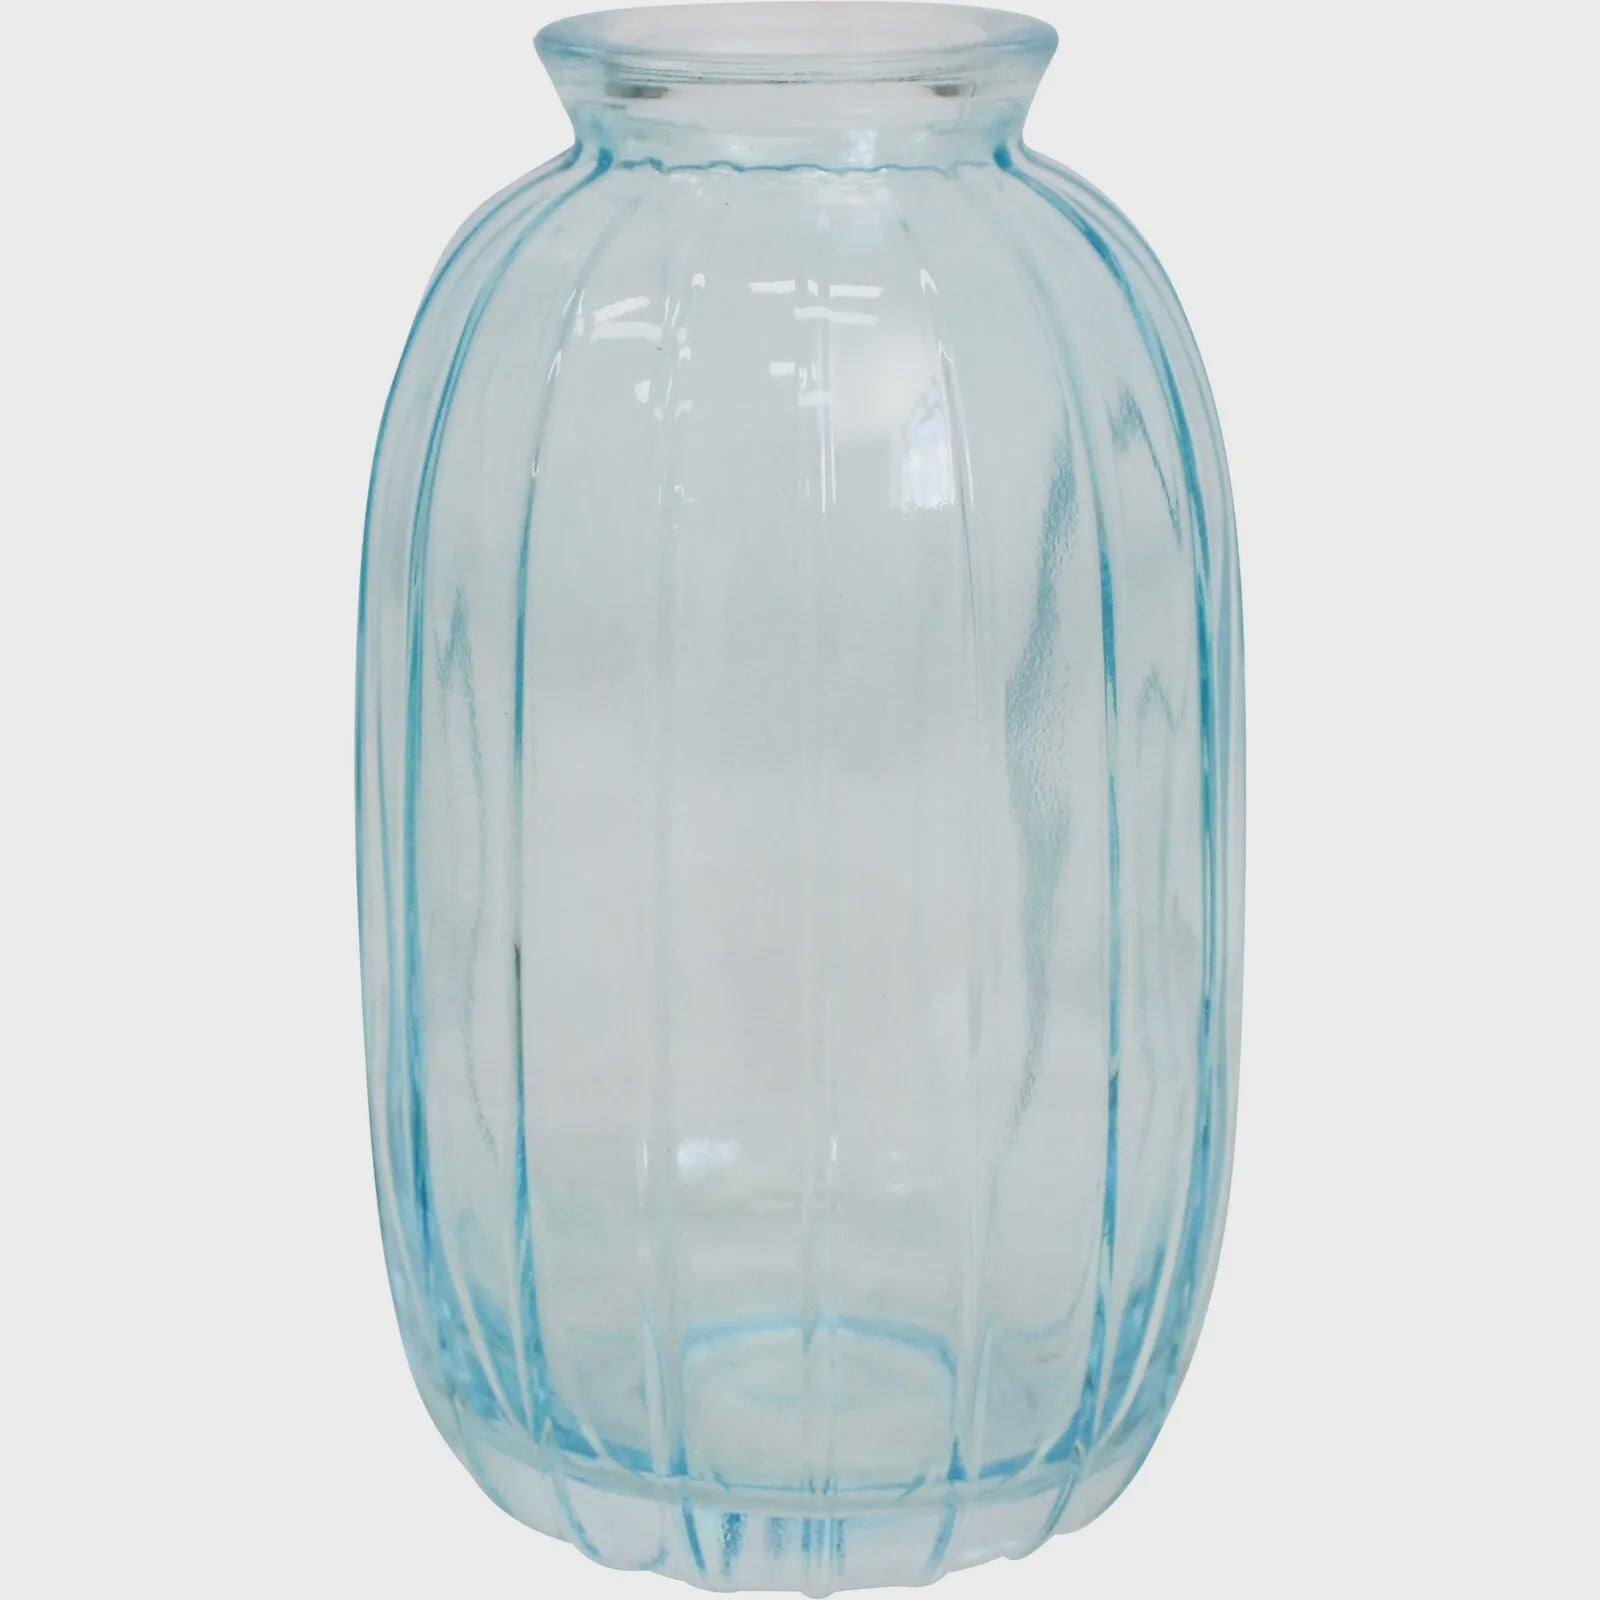 Glass Bud Vase - Sea Salt